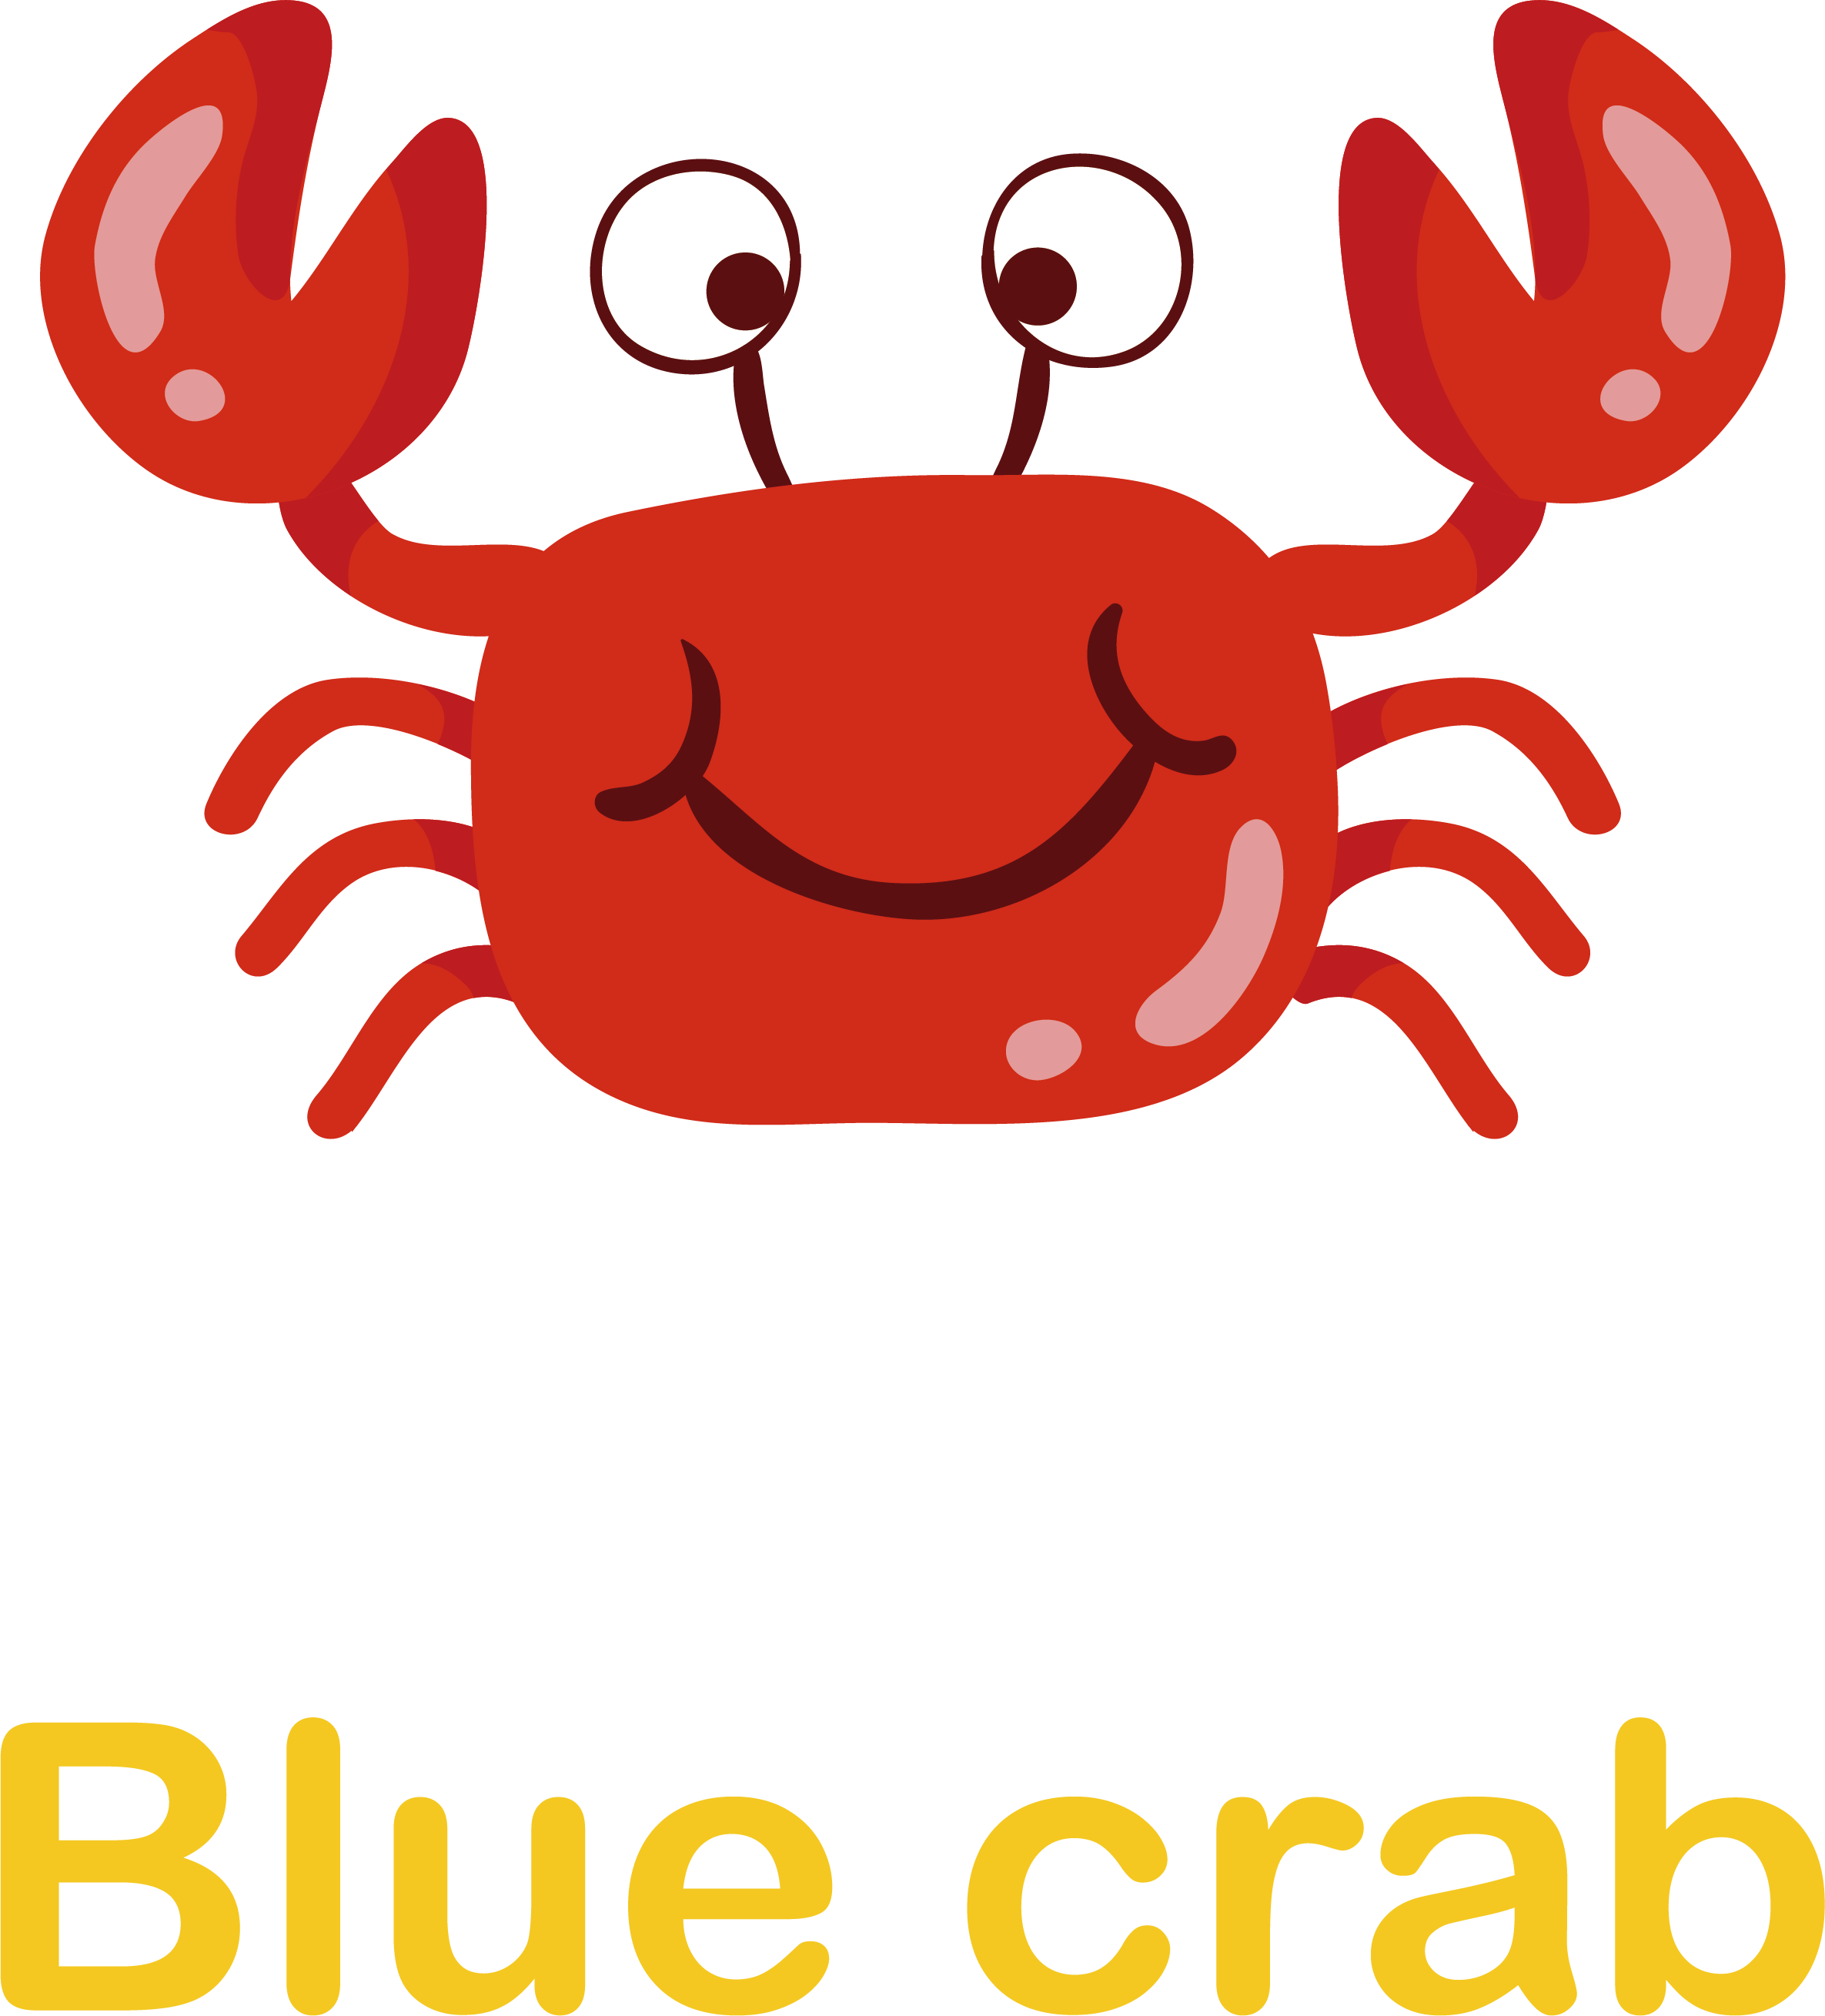 Crab Cartoon Clip Art - Vector Graphics (2371x2619)